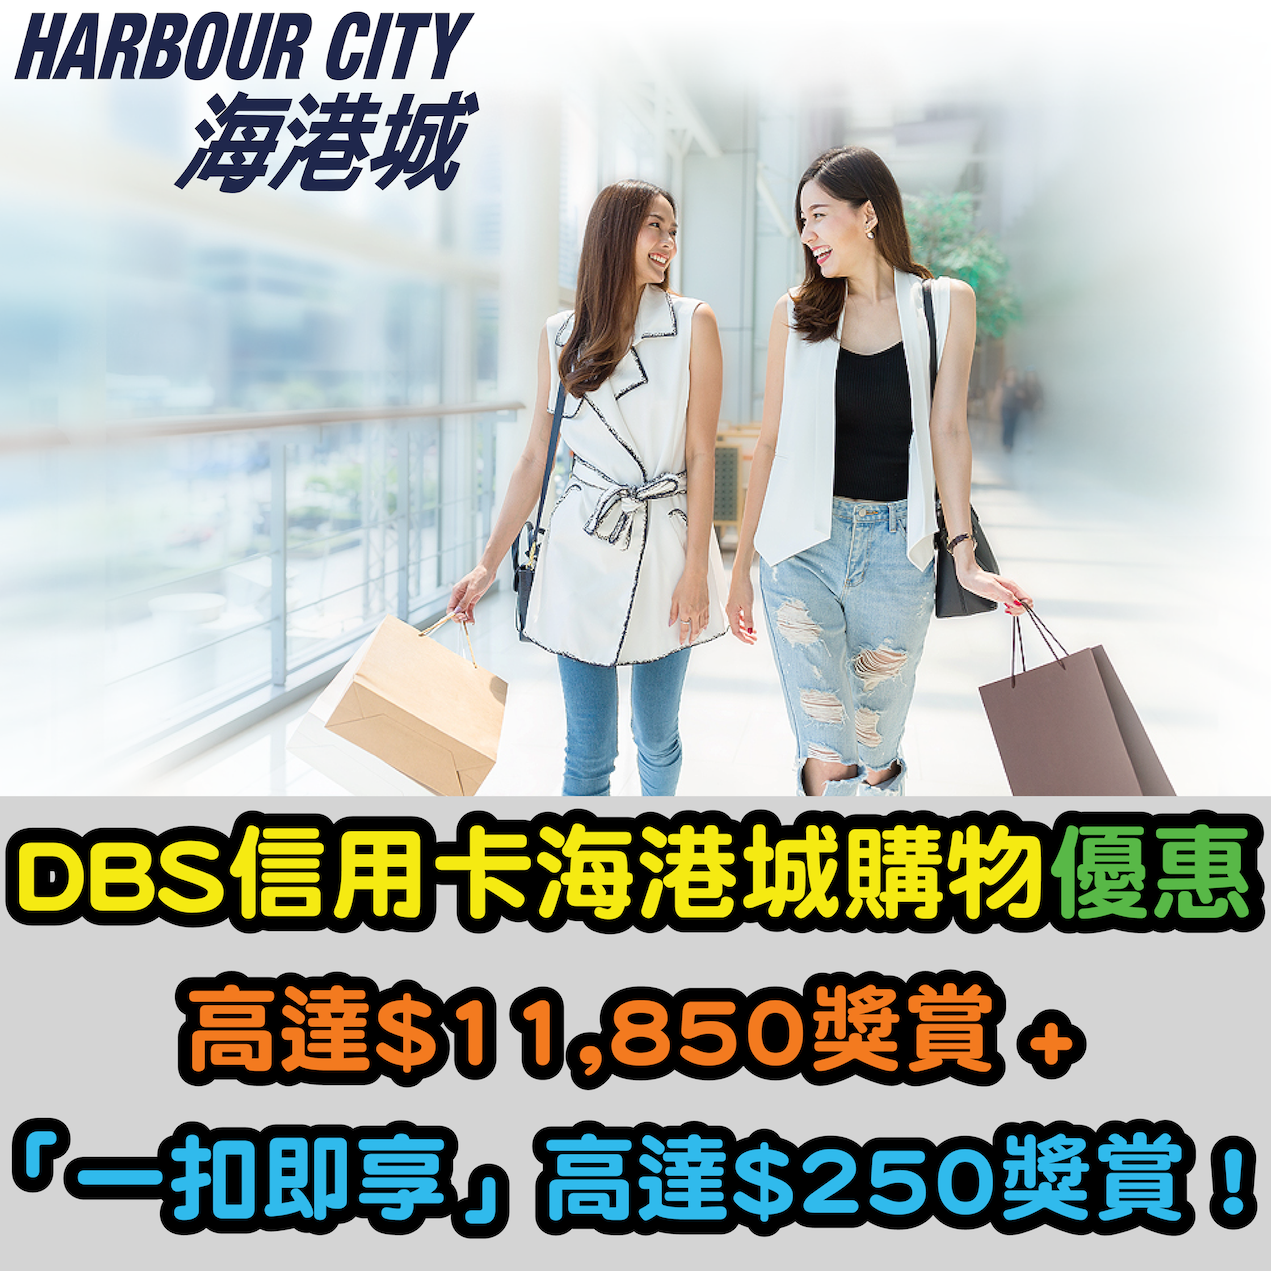 【DBS信用卡海港城購物優惠】高達HK$11,850優惠券獎賞 + 「一扣即享」高達HK$250獎賞！